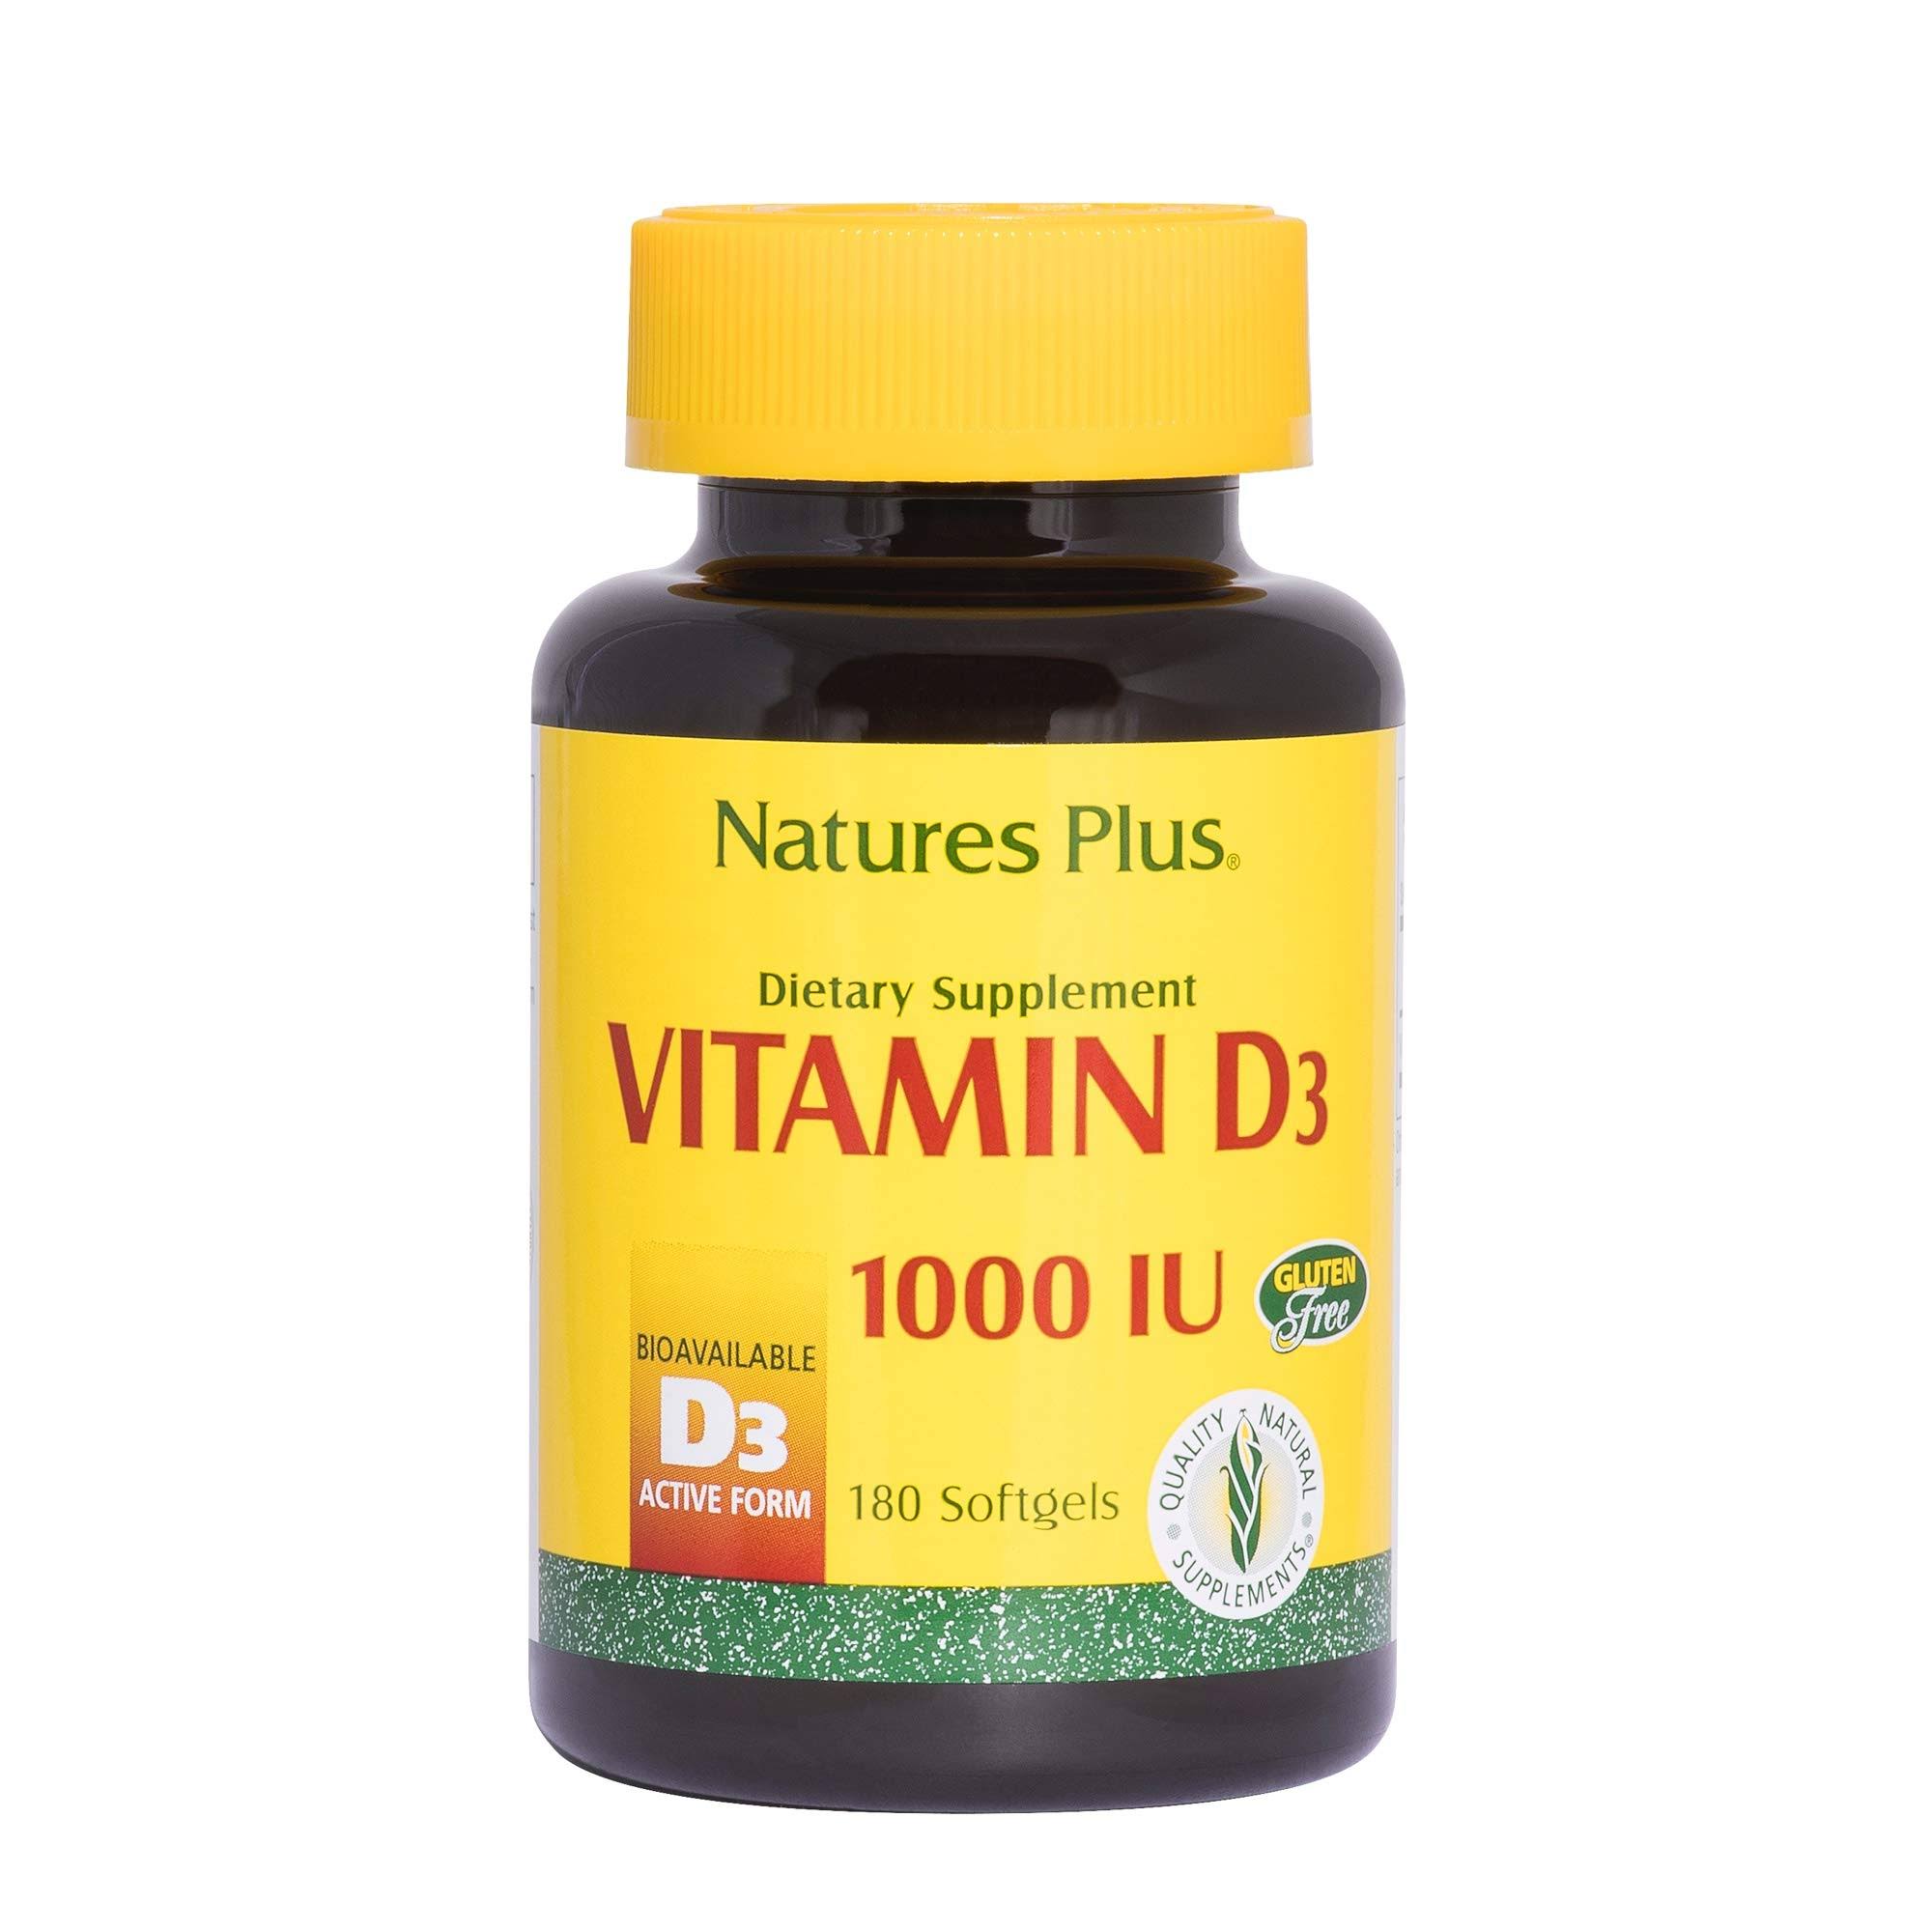 Natures Plus Vitamin D 1000 IU Dietary Supplement - 180 Capsules